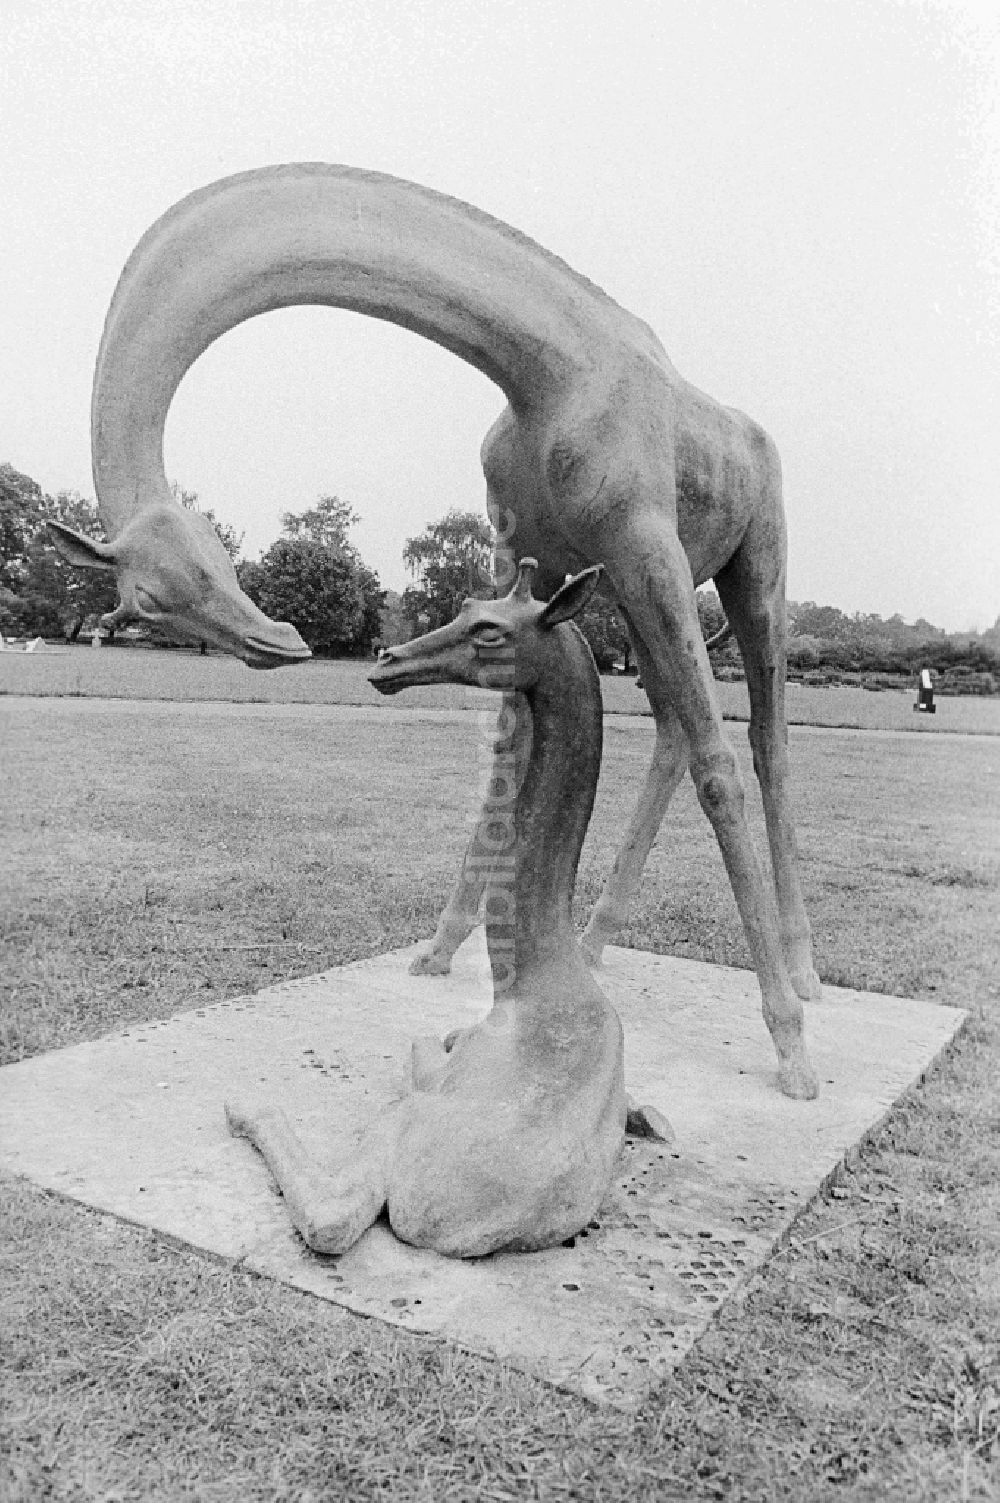 Berlin: Zwei Giraffen - Plastik von dem deutscher Bildhauer Hans-Detlev Henning im Treptower Park in Berlin, der ehemaligen Hauptstadt der DDR, Deutsche Demokratische Republik